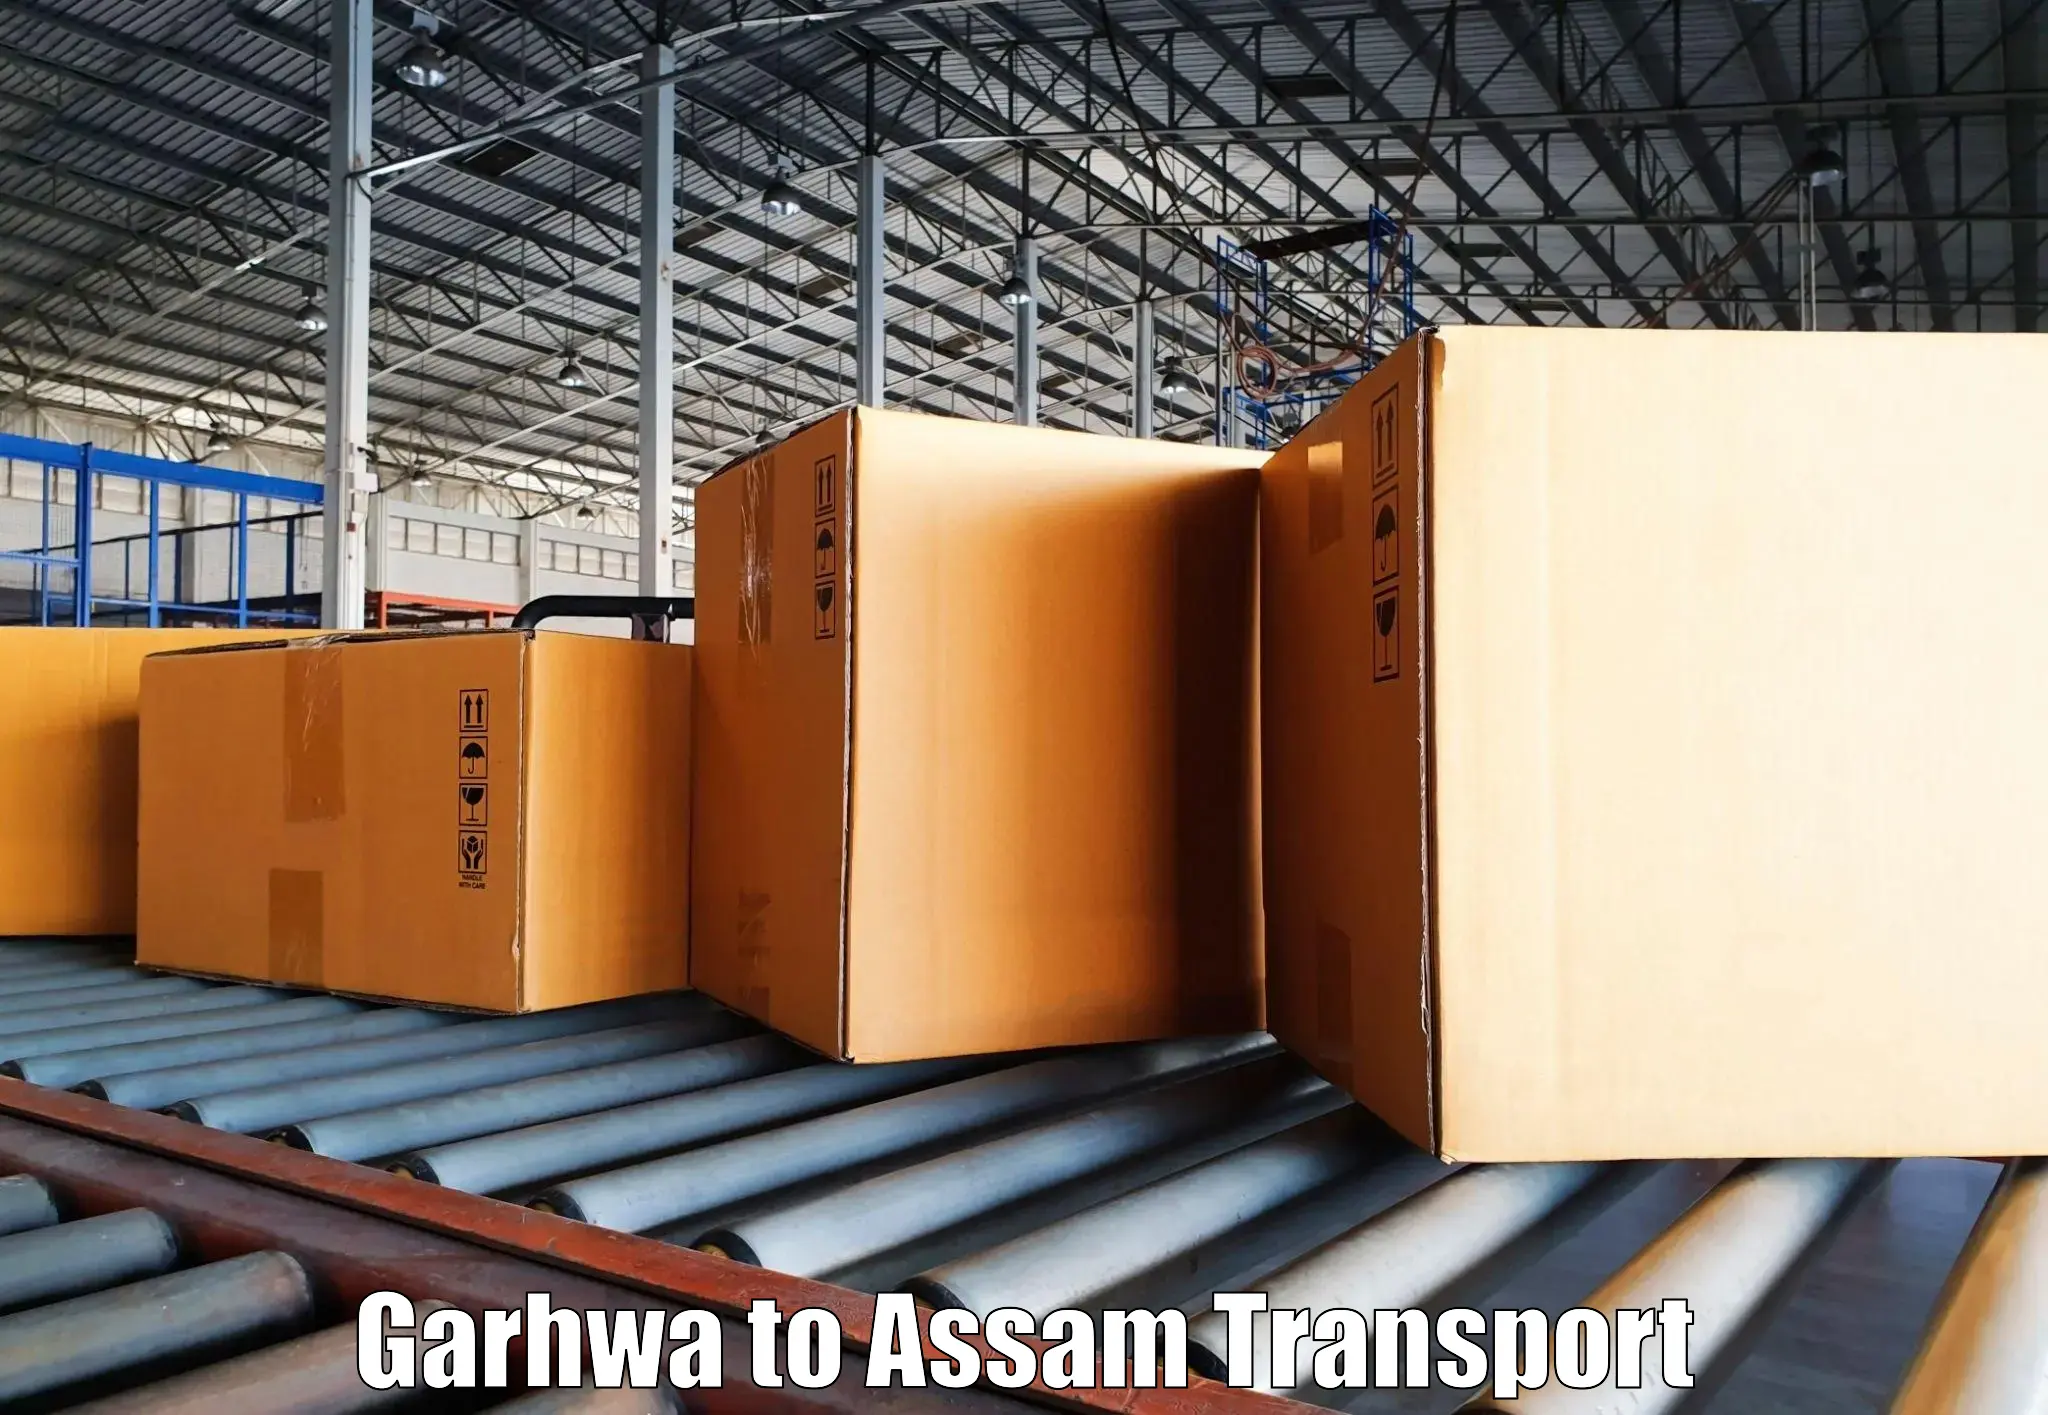 Online transport service Garhwa to Bhergaon